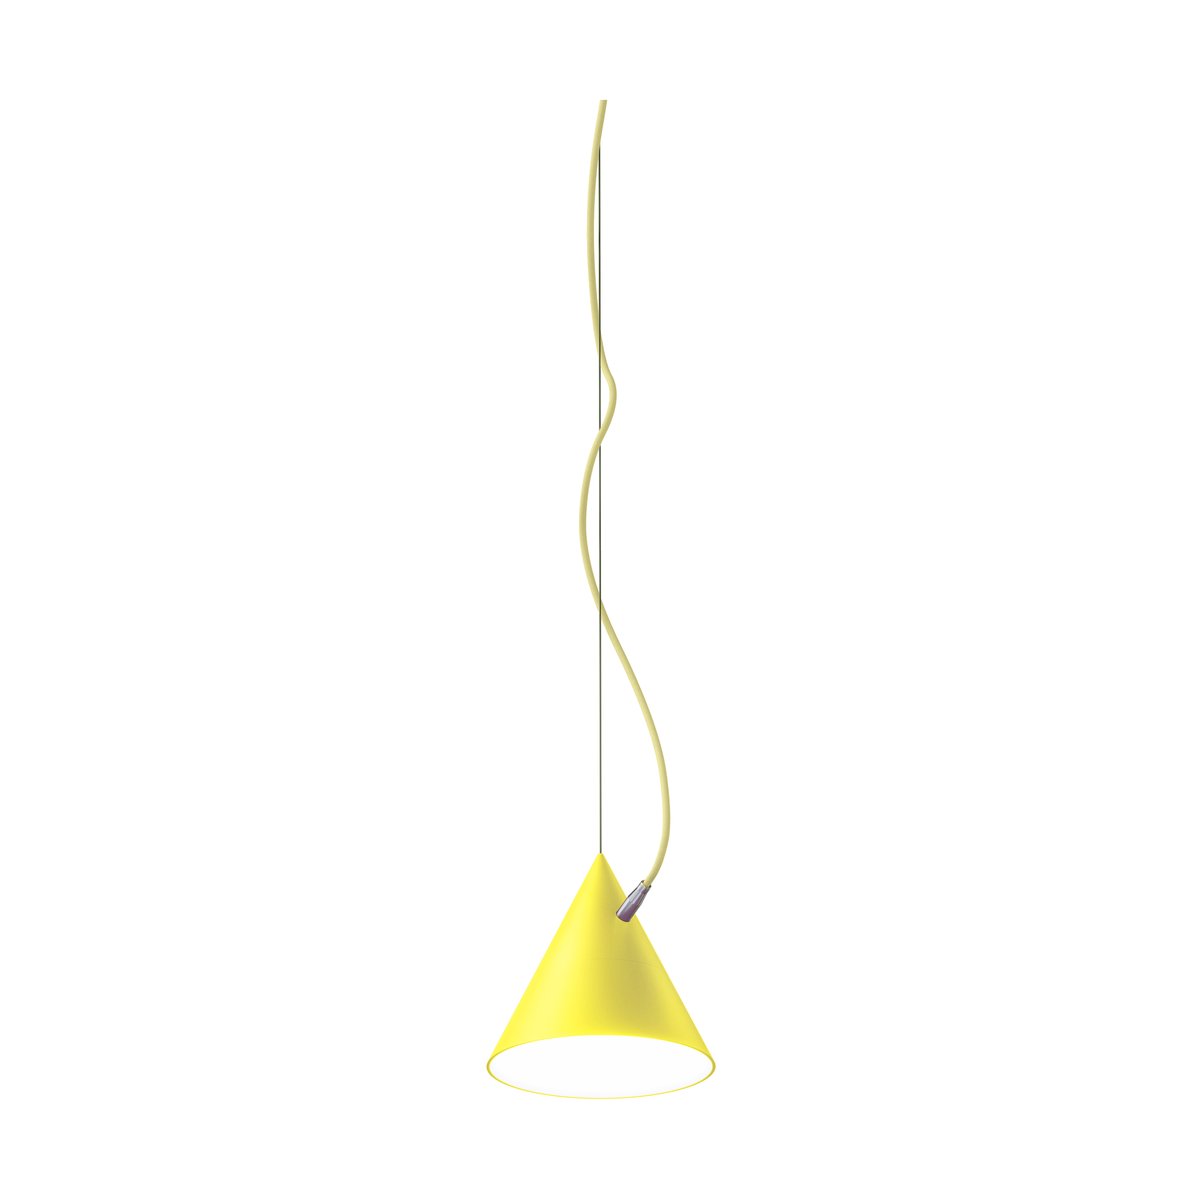 Noon Castor hanglamp 20 cm Goud-lichtgeel-zilver